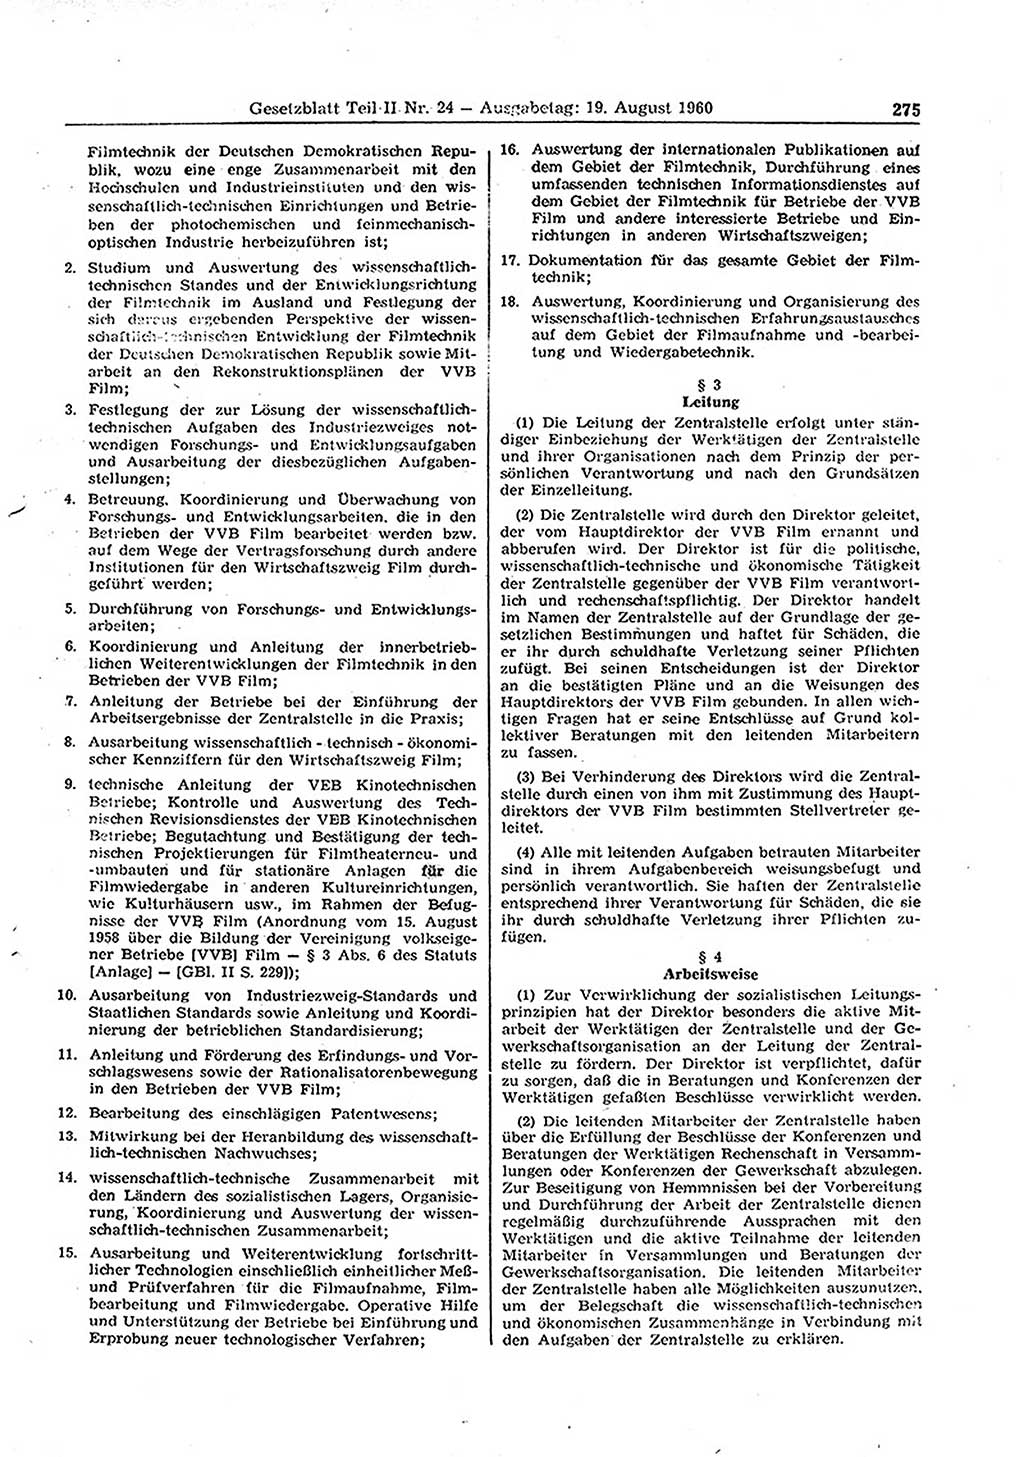 Gesetzblatt (GBl.) der Deutschen Demokratischen Republik (DDR) Teil ⅠⅠ 1960, Seite 275 (GBl. DDR ⅠⅠ 1960, S. 275)